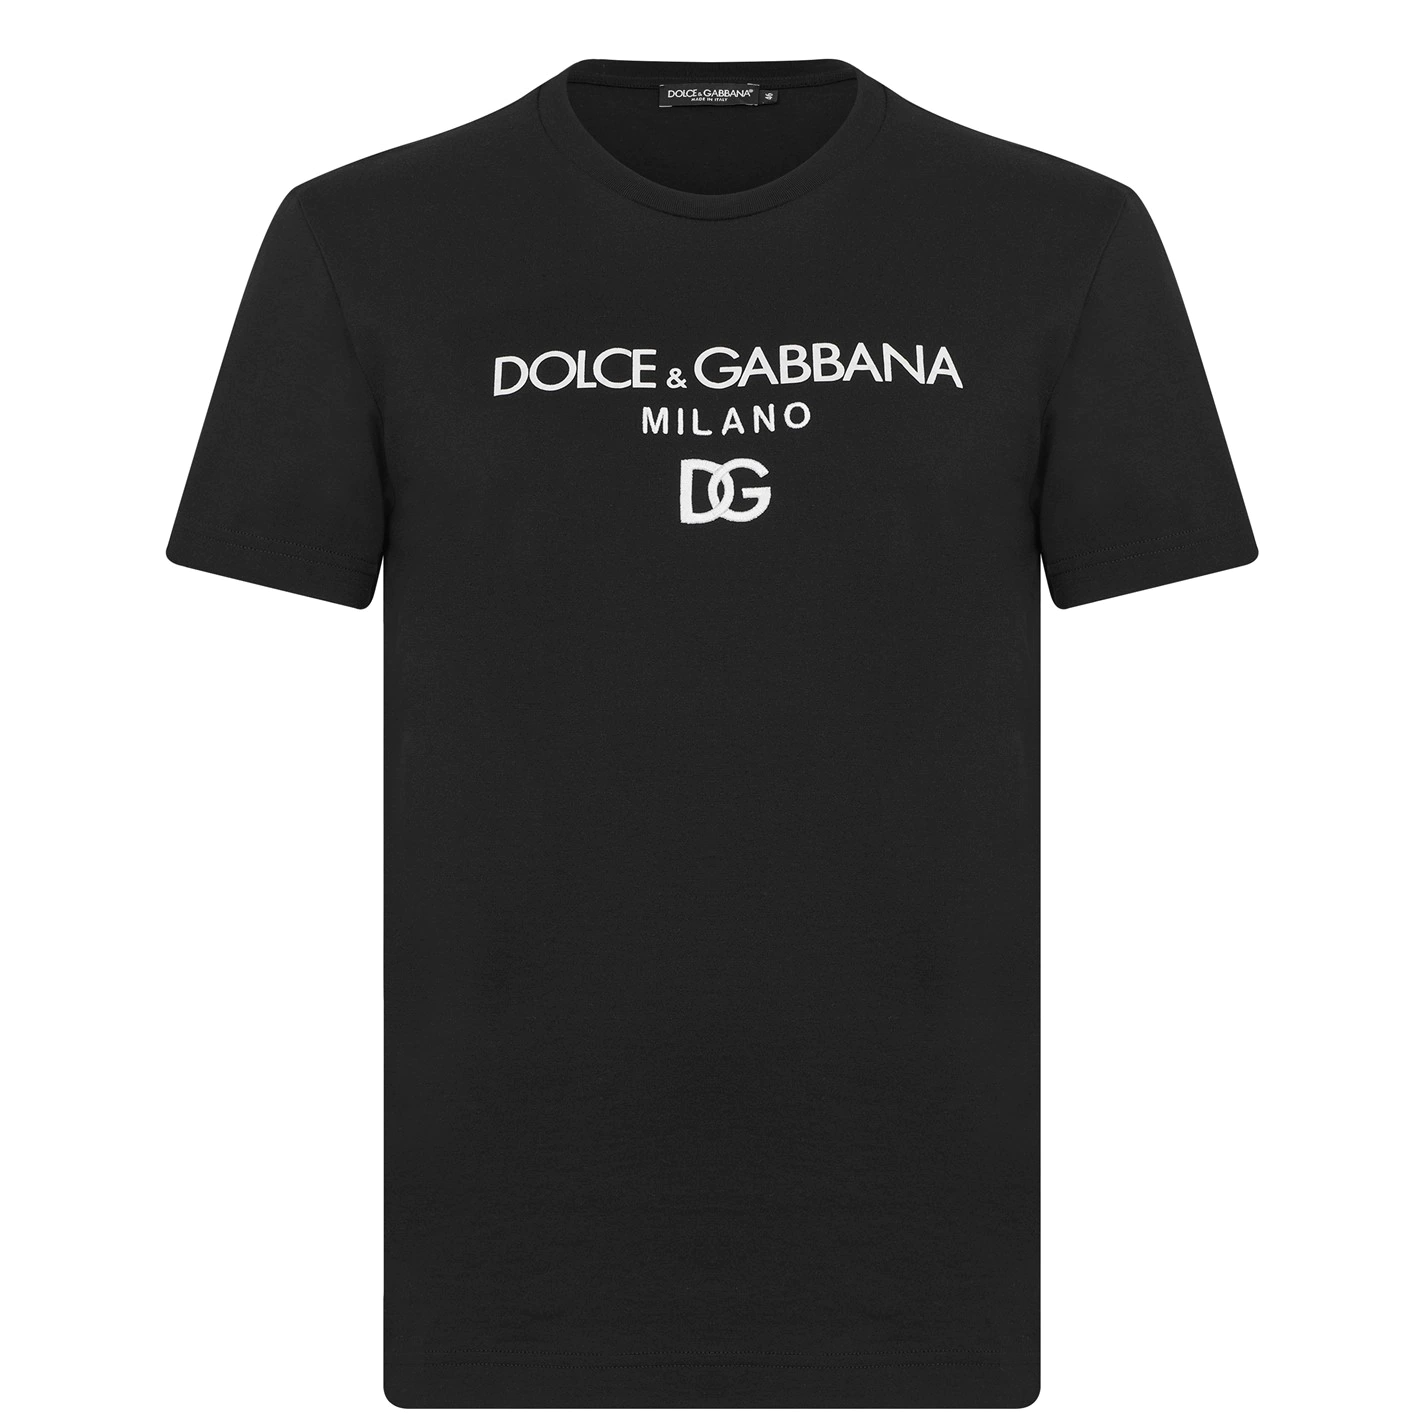 Dolce & Gabbana Milano T Shirt